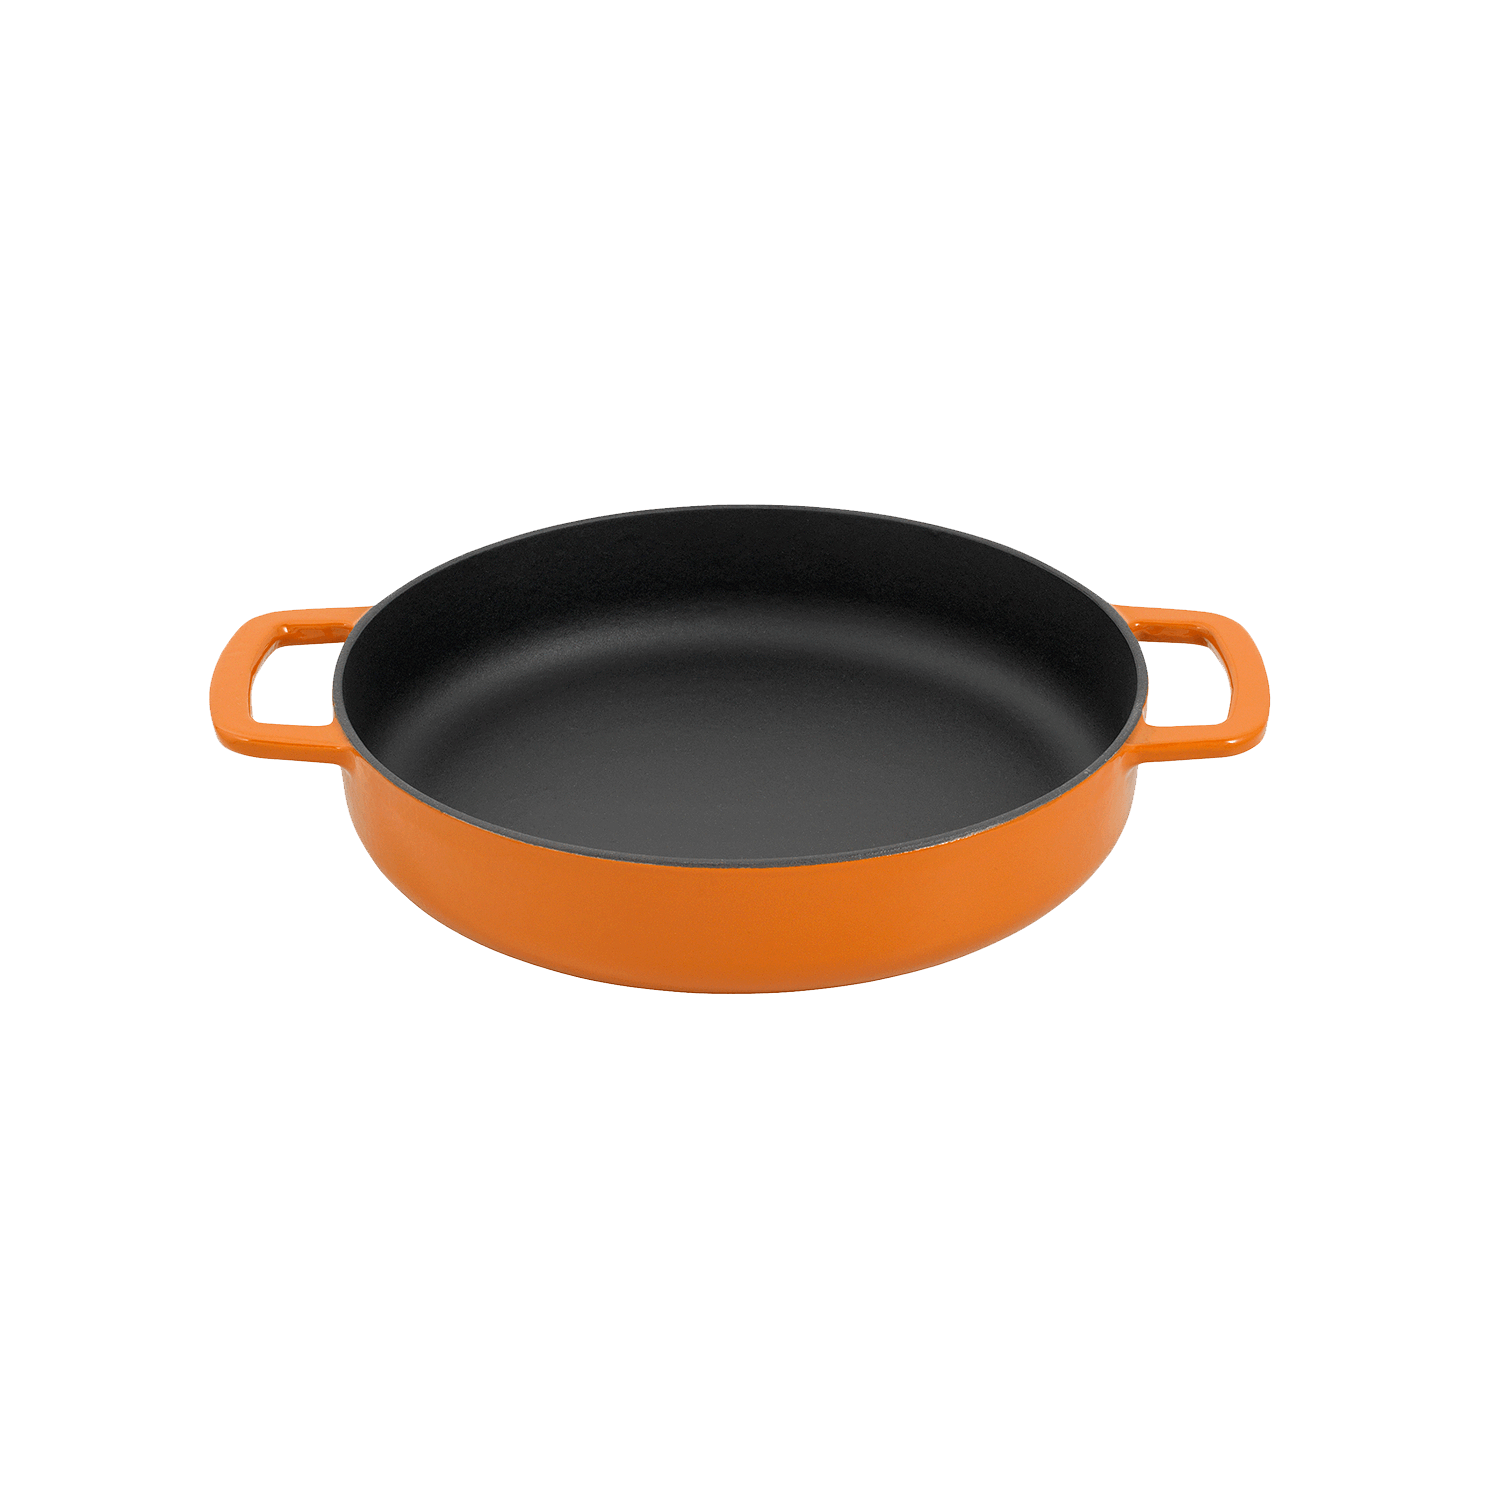 cast iron fry pan, comebekk fry pan